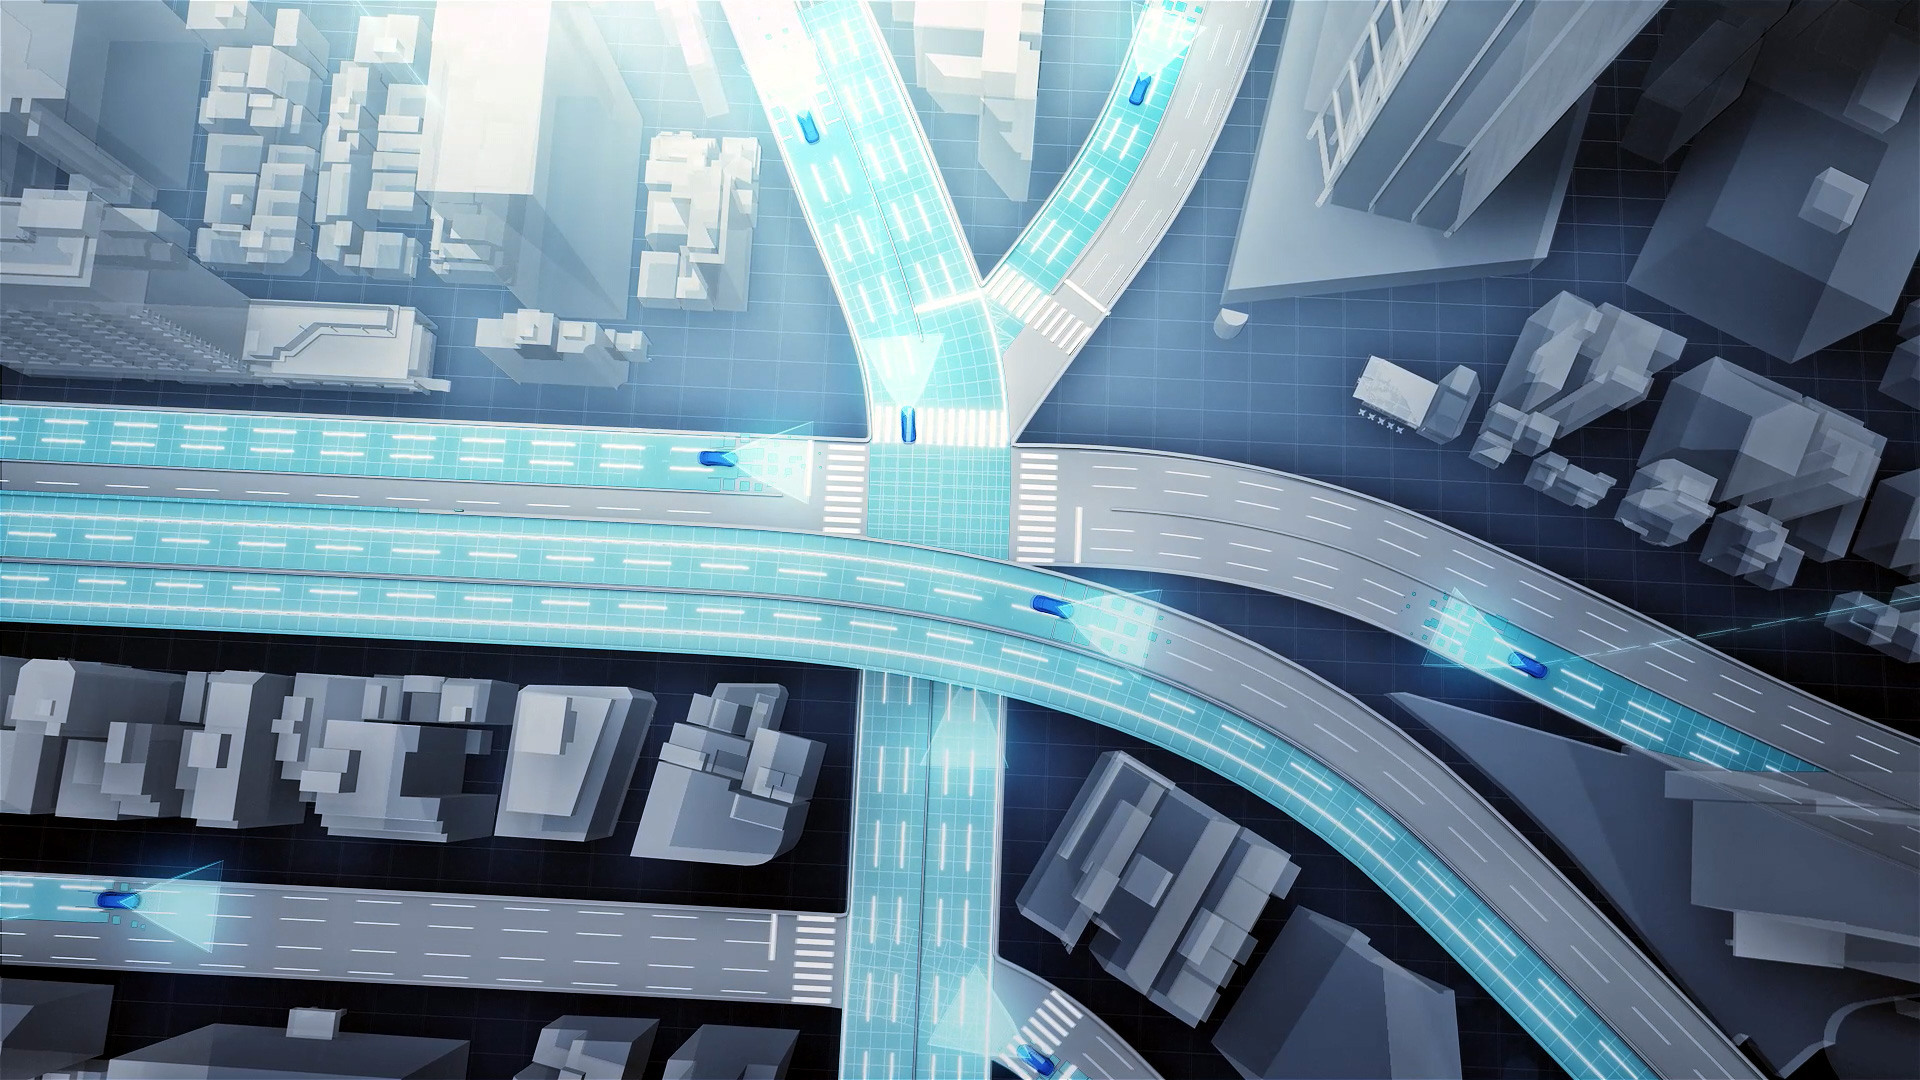 HD mapy pomôžu autonómnym autám v navigácií